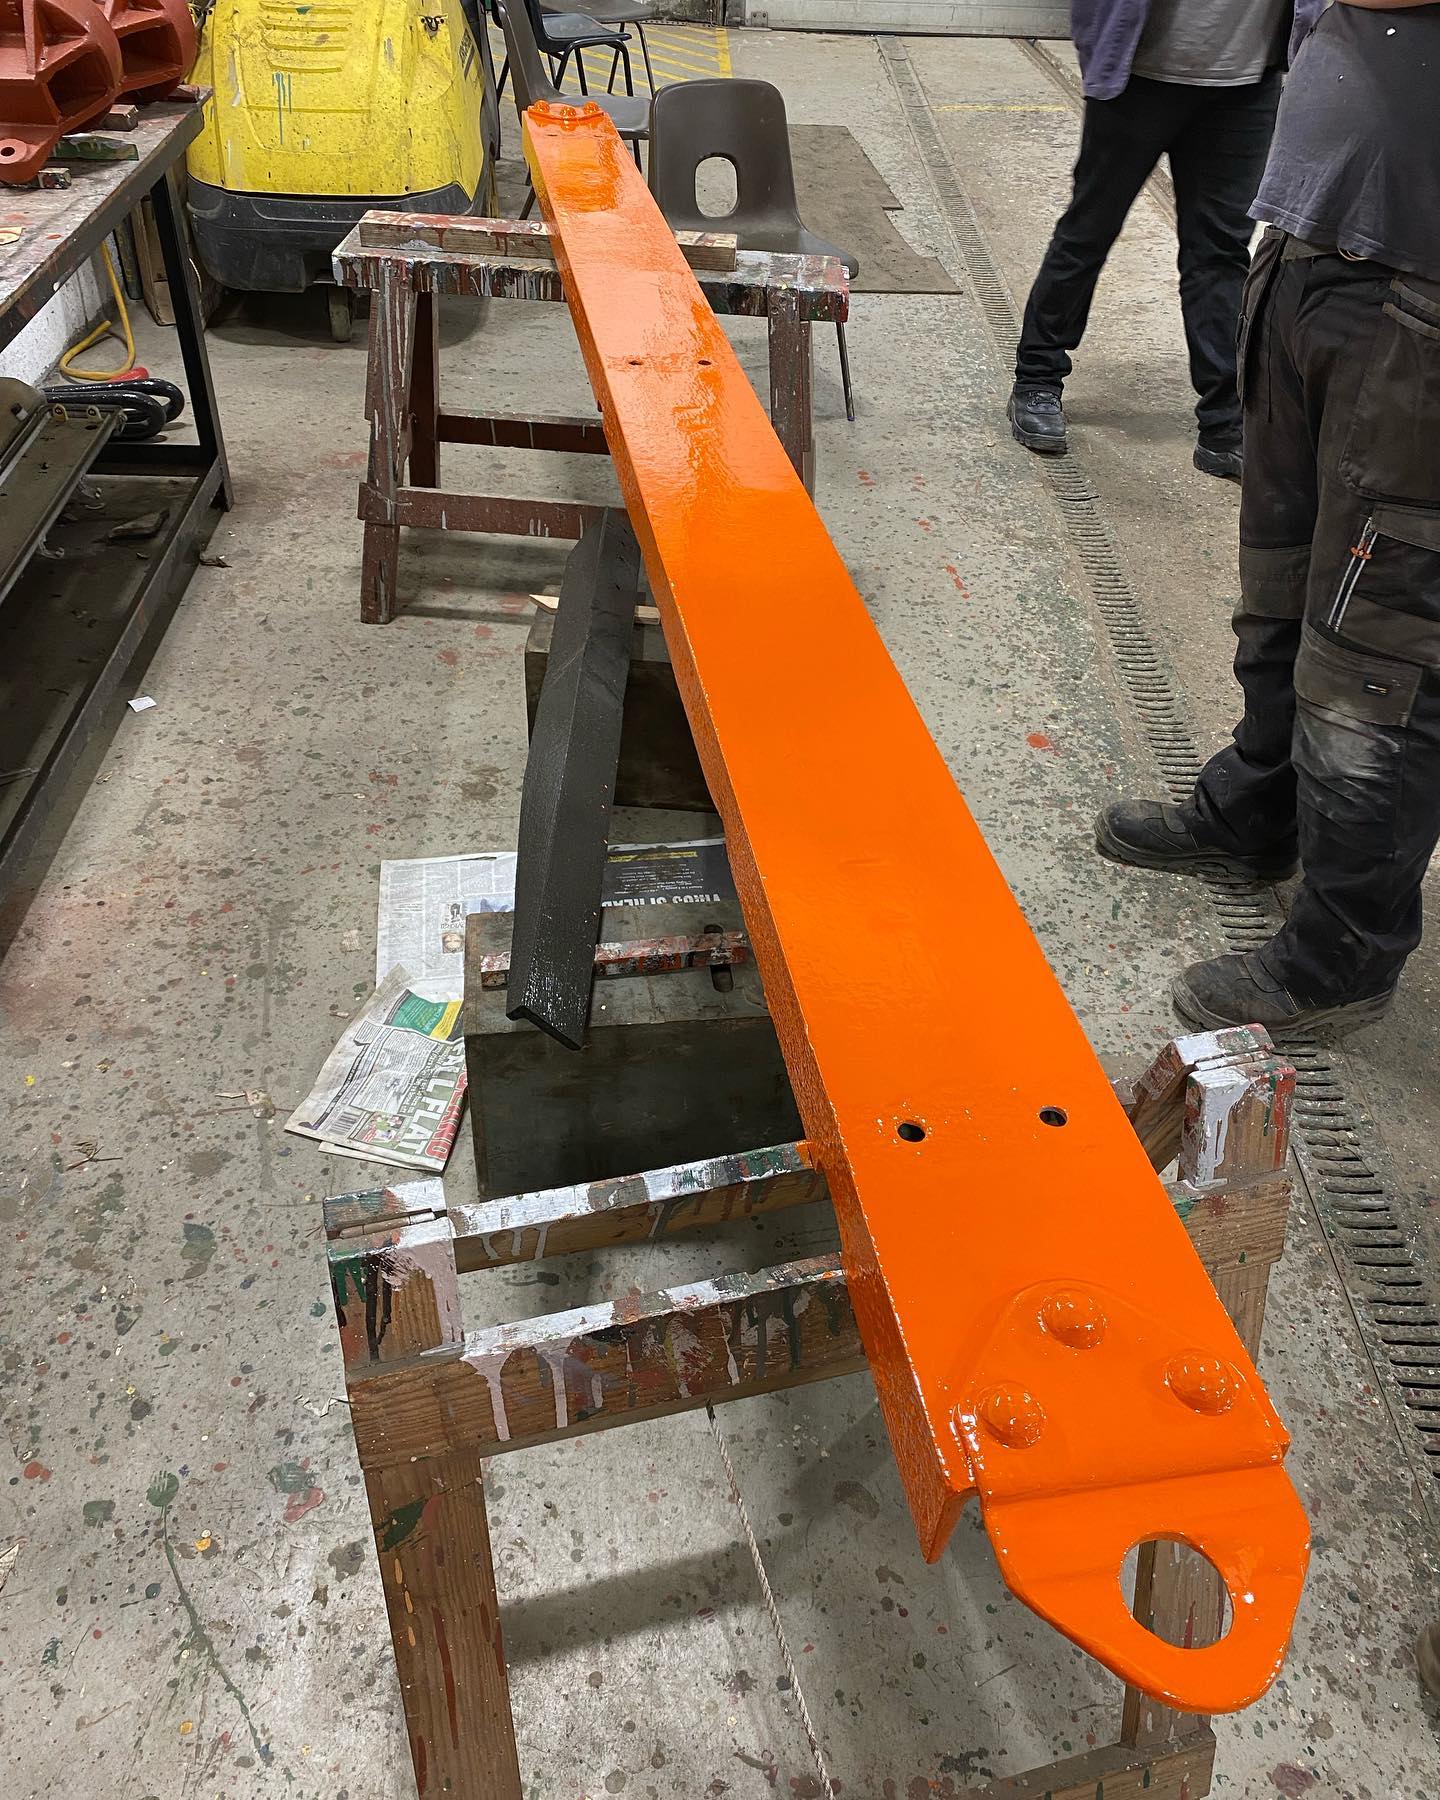 Metal plank in Engineers Orange - 19 September 2021